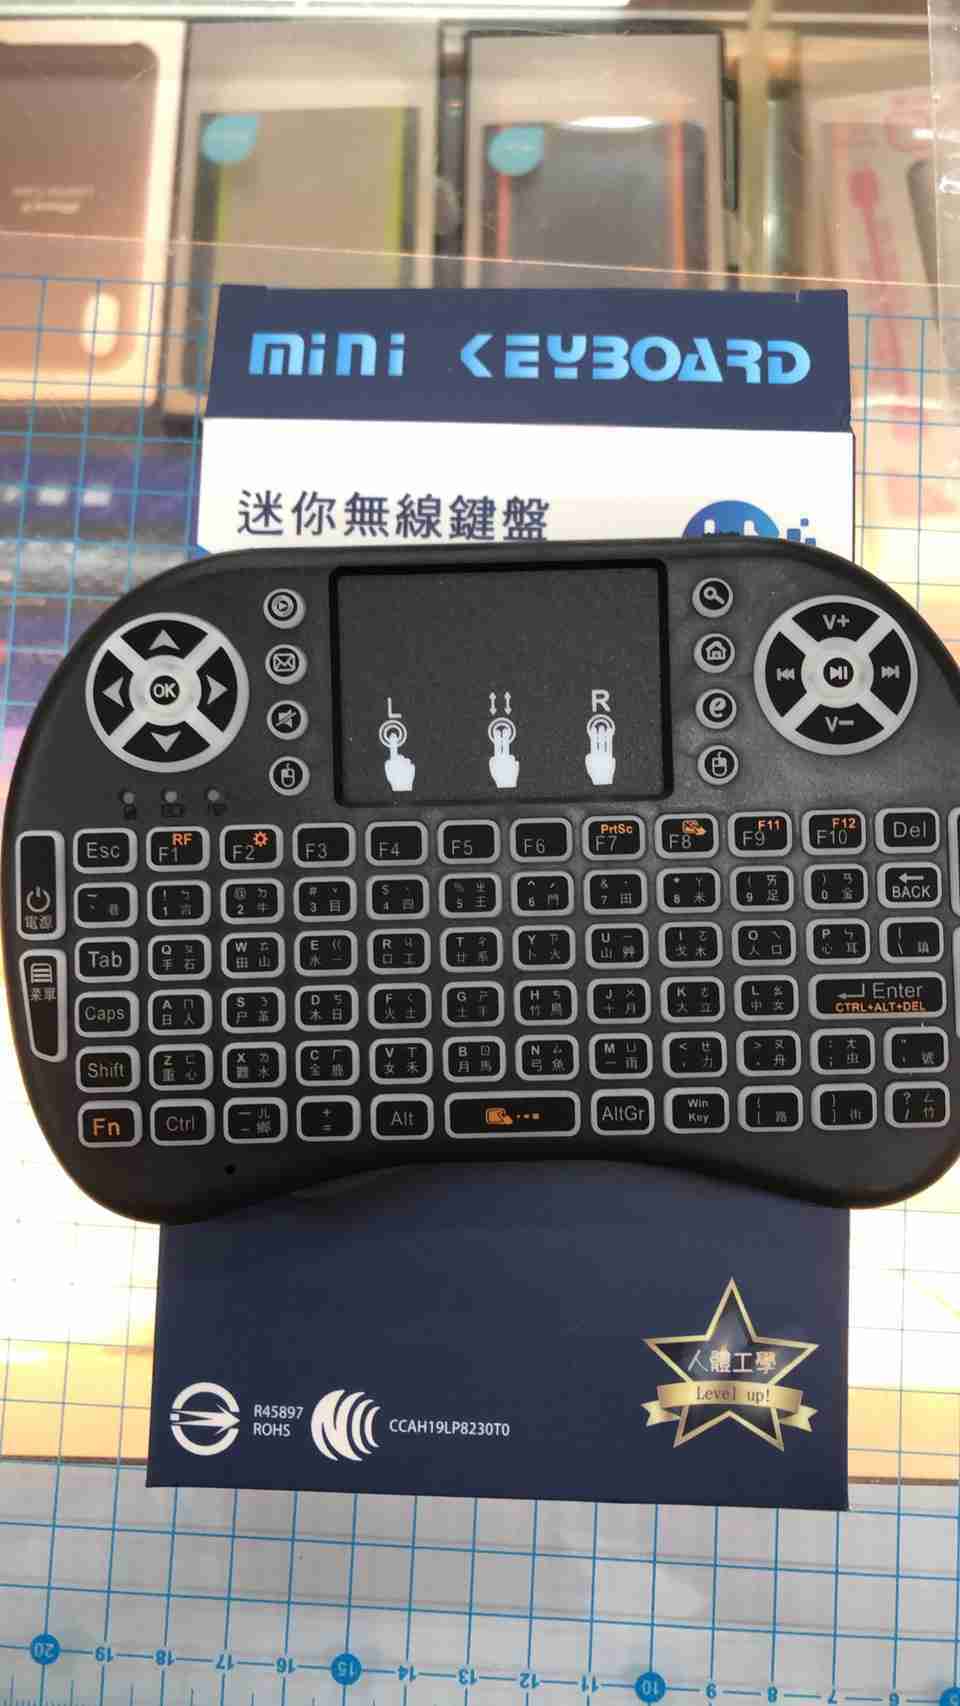 【艾爾巴數位】全新 無線鍵盤 無線連接 迷你 超輕薄 (國家商檢認證) 可用於電視機上盒、電腦、等3C設備